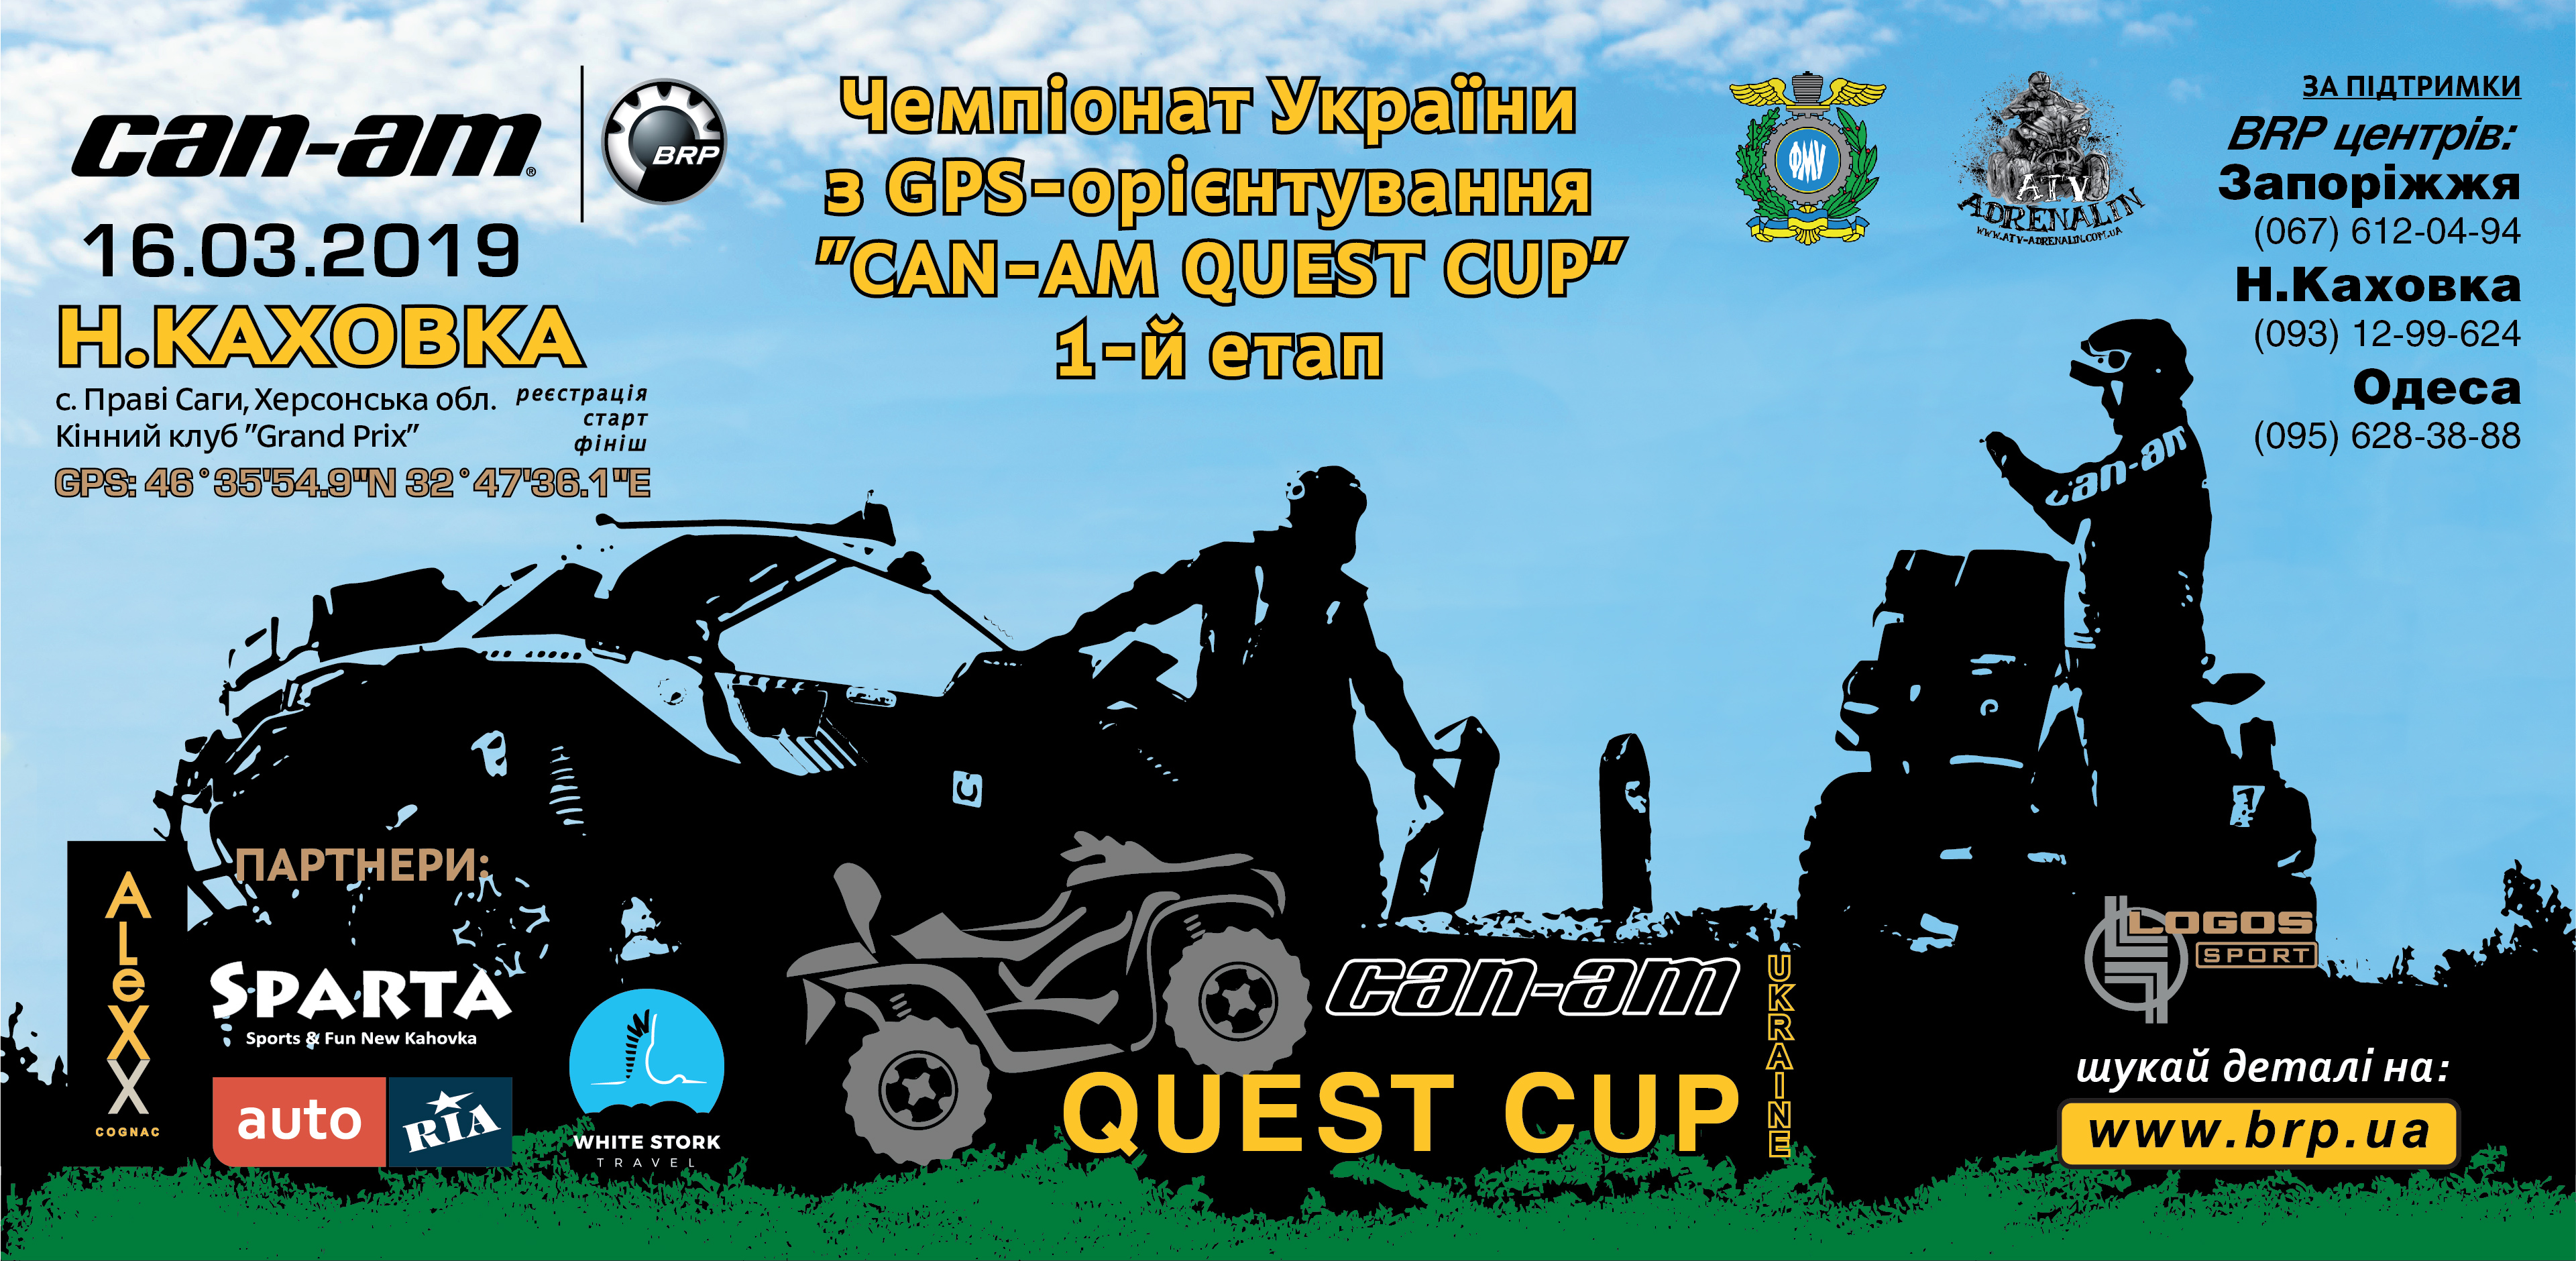 2019.03.16 – 1-й етап Чемпіонату України 2019 з GPS-орієнтування «Can-Am Quest Cup»!